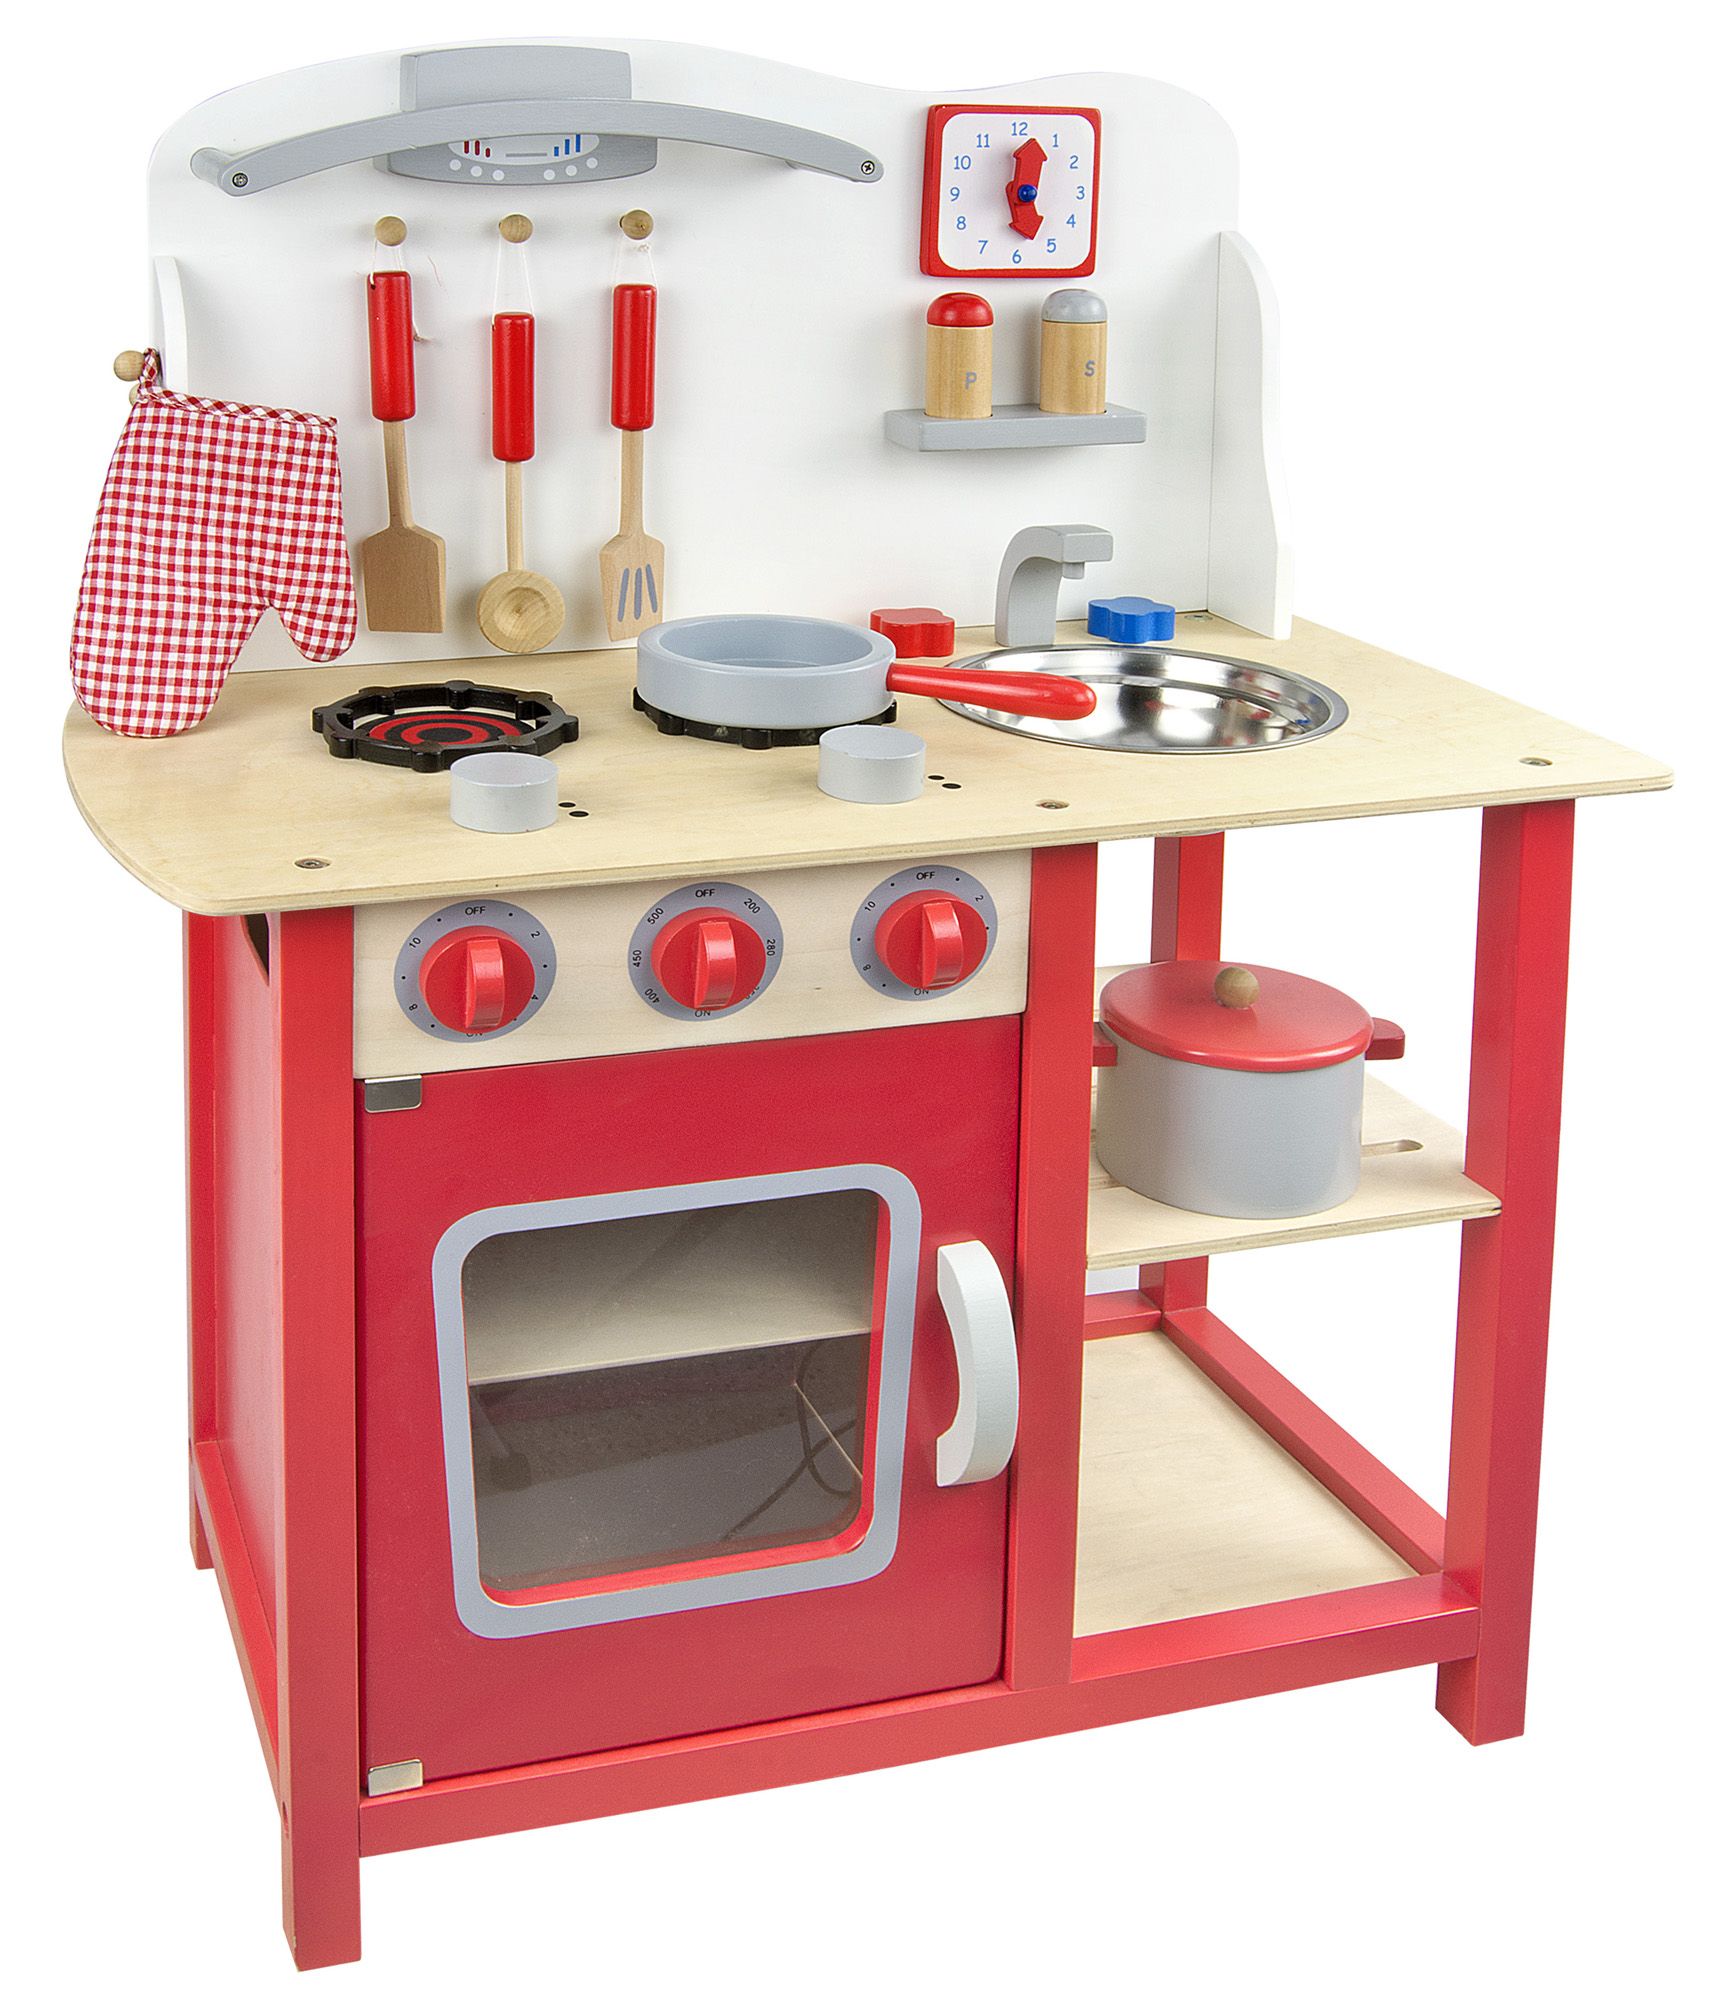 Cucina per bambini classica in legno con accessori - rossa Leomark IT